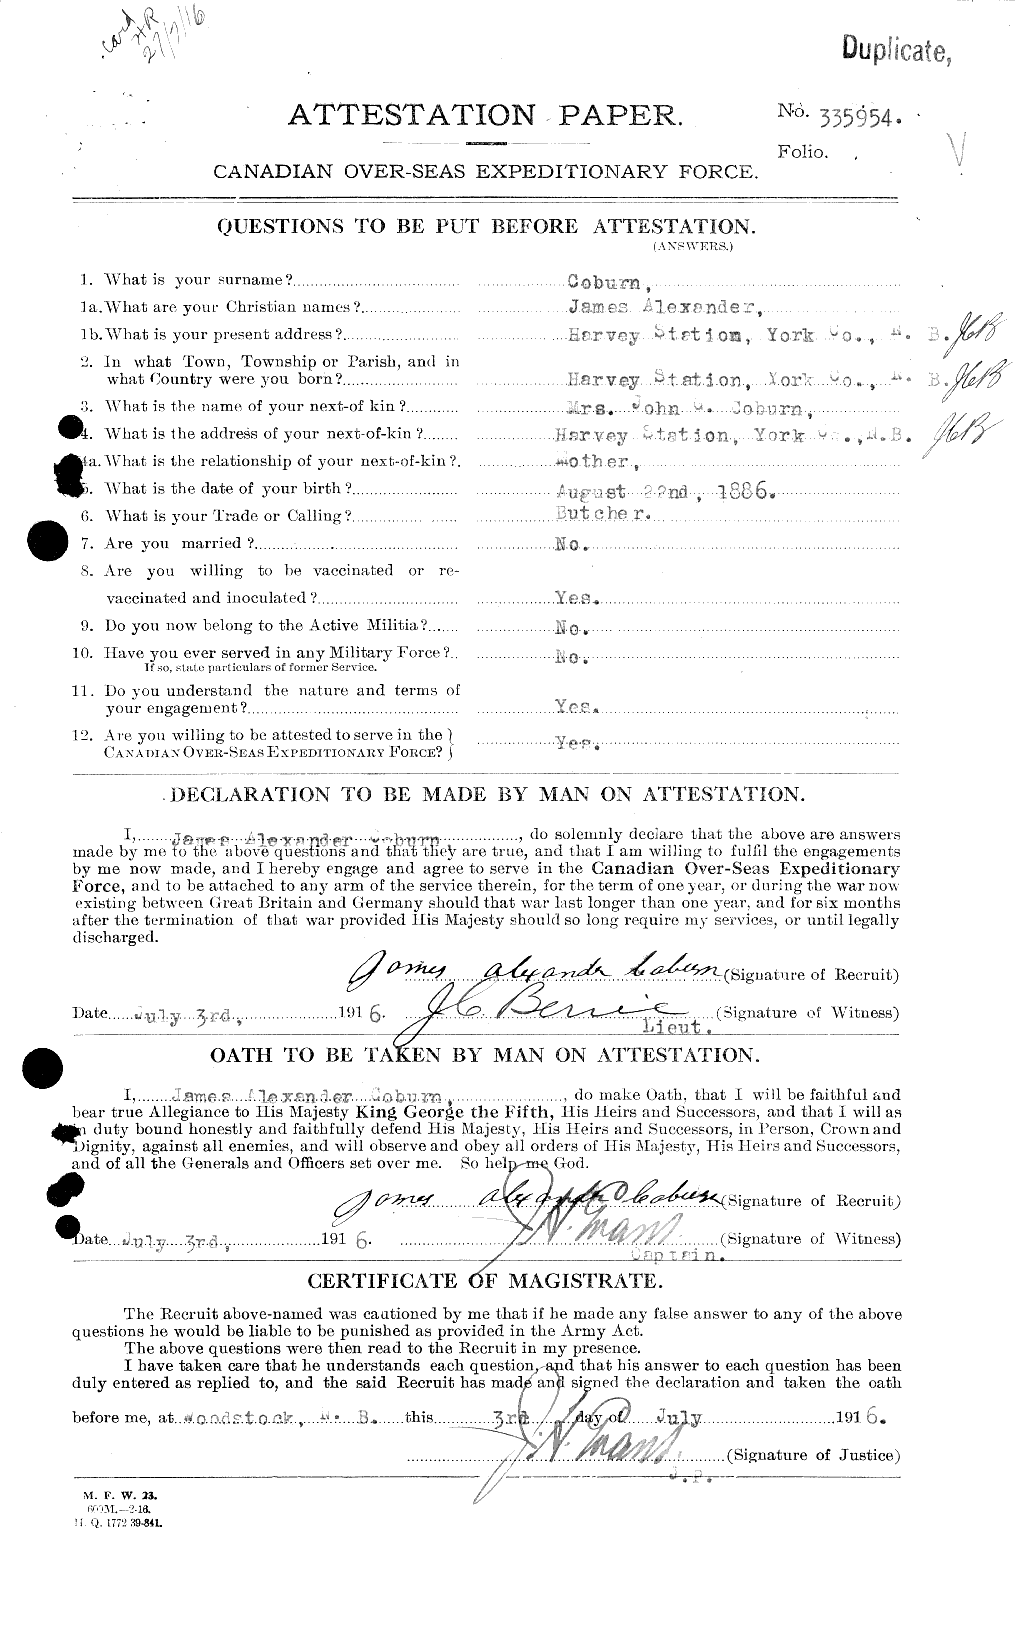 Dossiers du Personnel de la Première Guerre mondiale - CEC 025768a